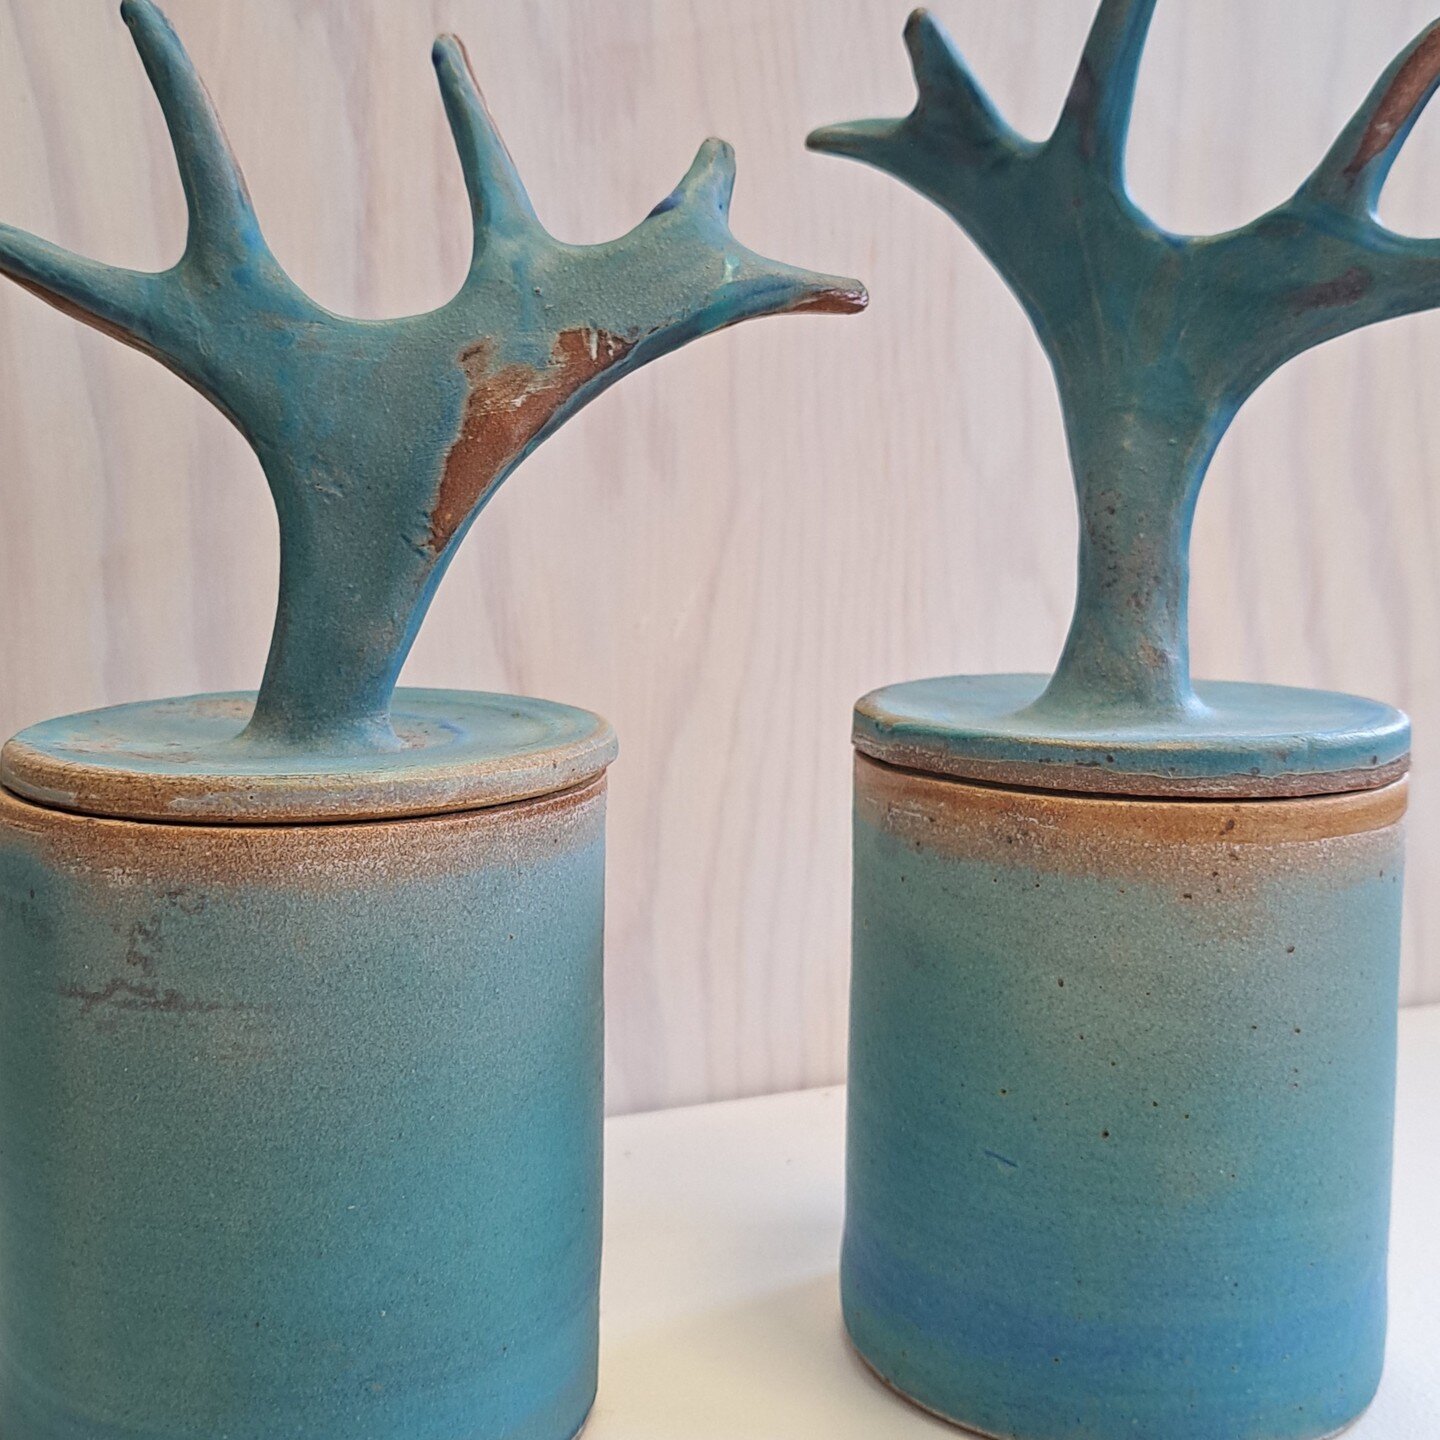 Gallerikiosken har f&aring;tt inn ny keramikk til salg, fra keramiker Monica Egeli bosatt p&aring; Nesodden. Hun har v&aelig;rt flere ganger i Varanger og hentet inspirasjon til nye arbeider. Hornkrukkene er skapt etter inspirasjon fra vakre Finnmark